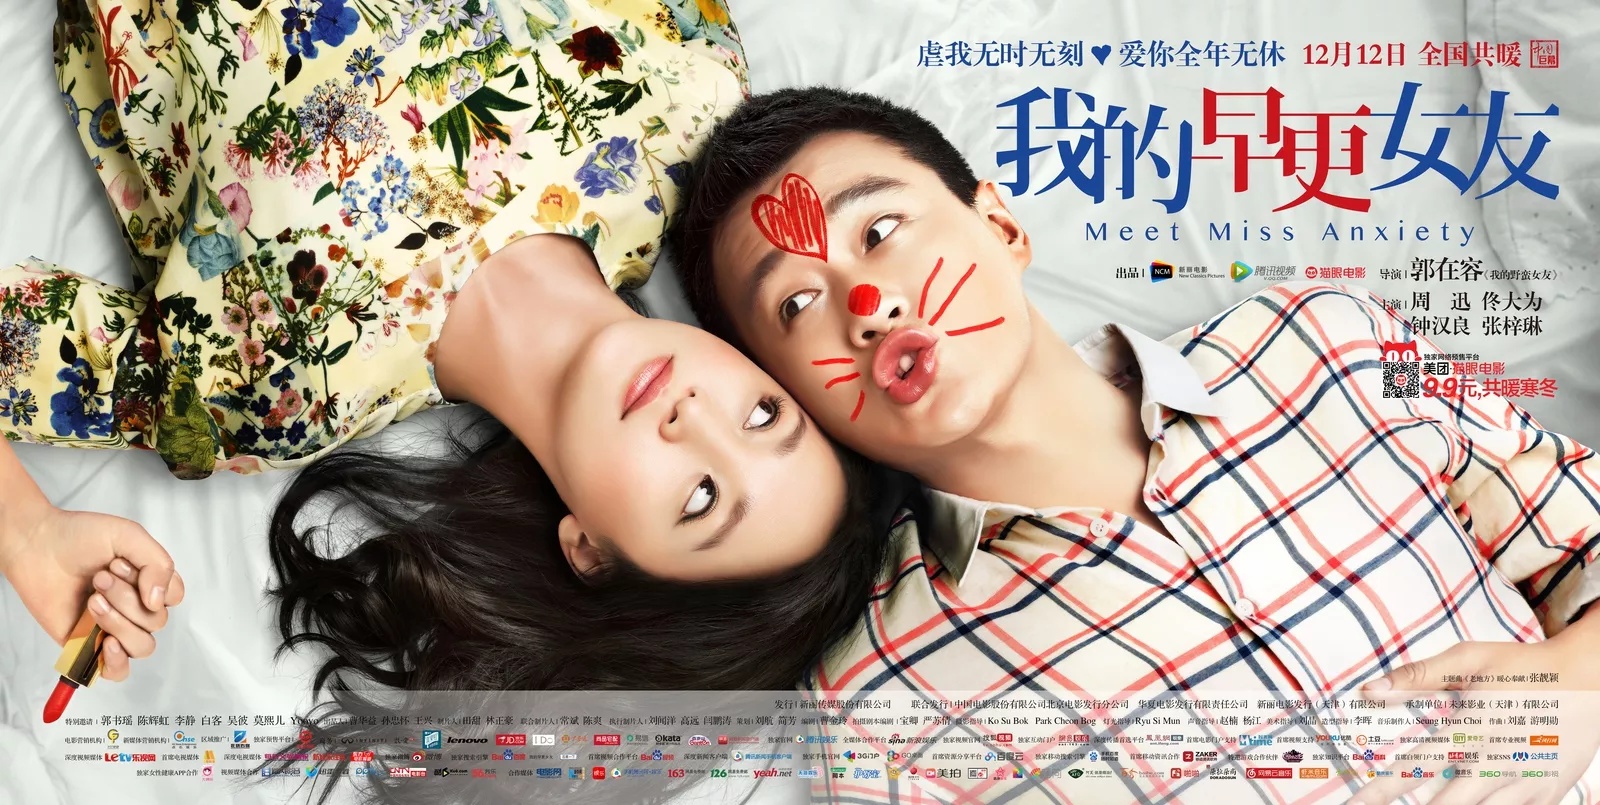 Phim hoặc của Chung Hán Lương đóng: quý khách gái hồi xuân của tôi - Meet miss anxiety (2014)